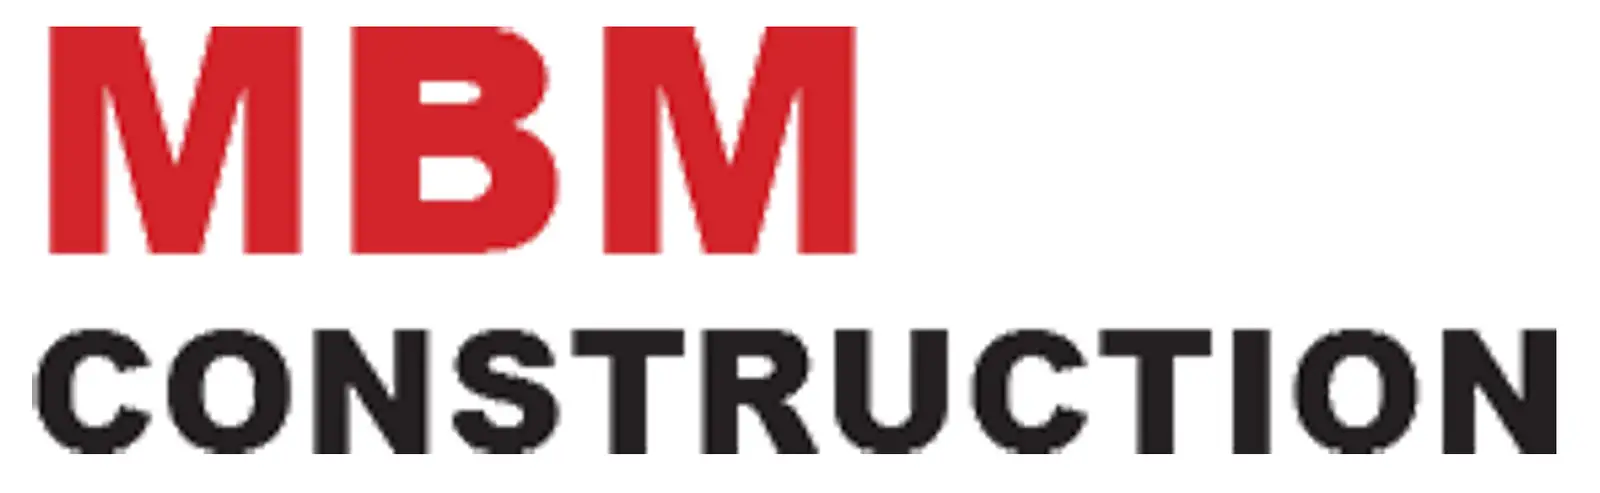 MBM Construction Company  logo